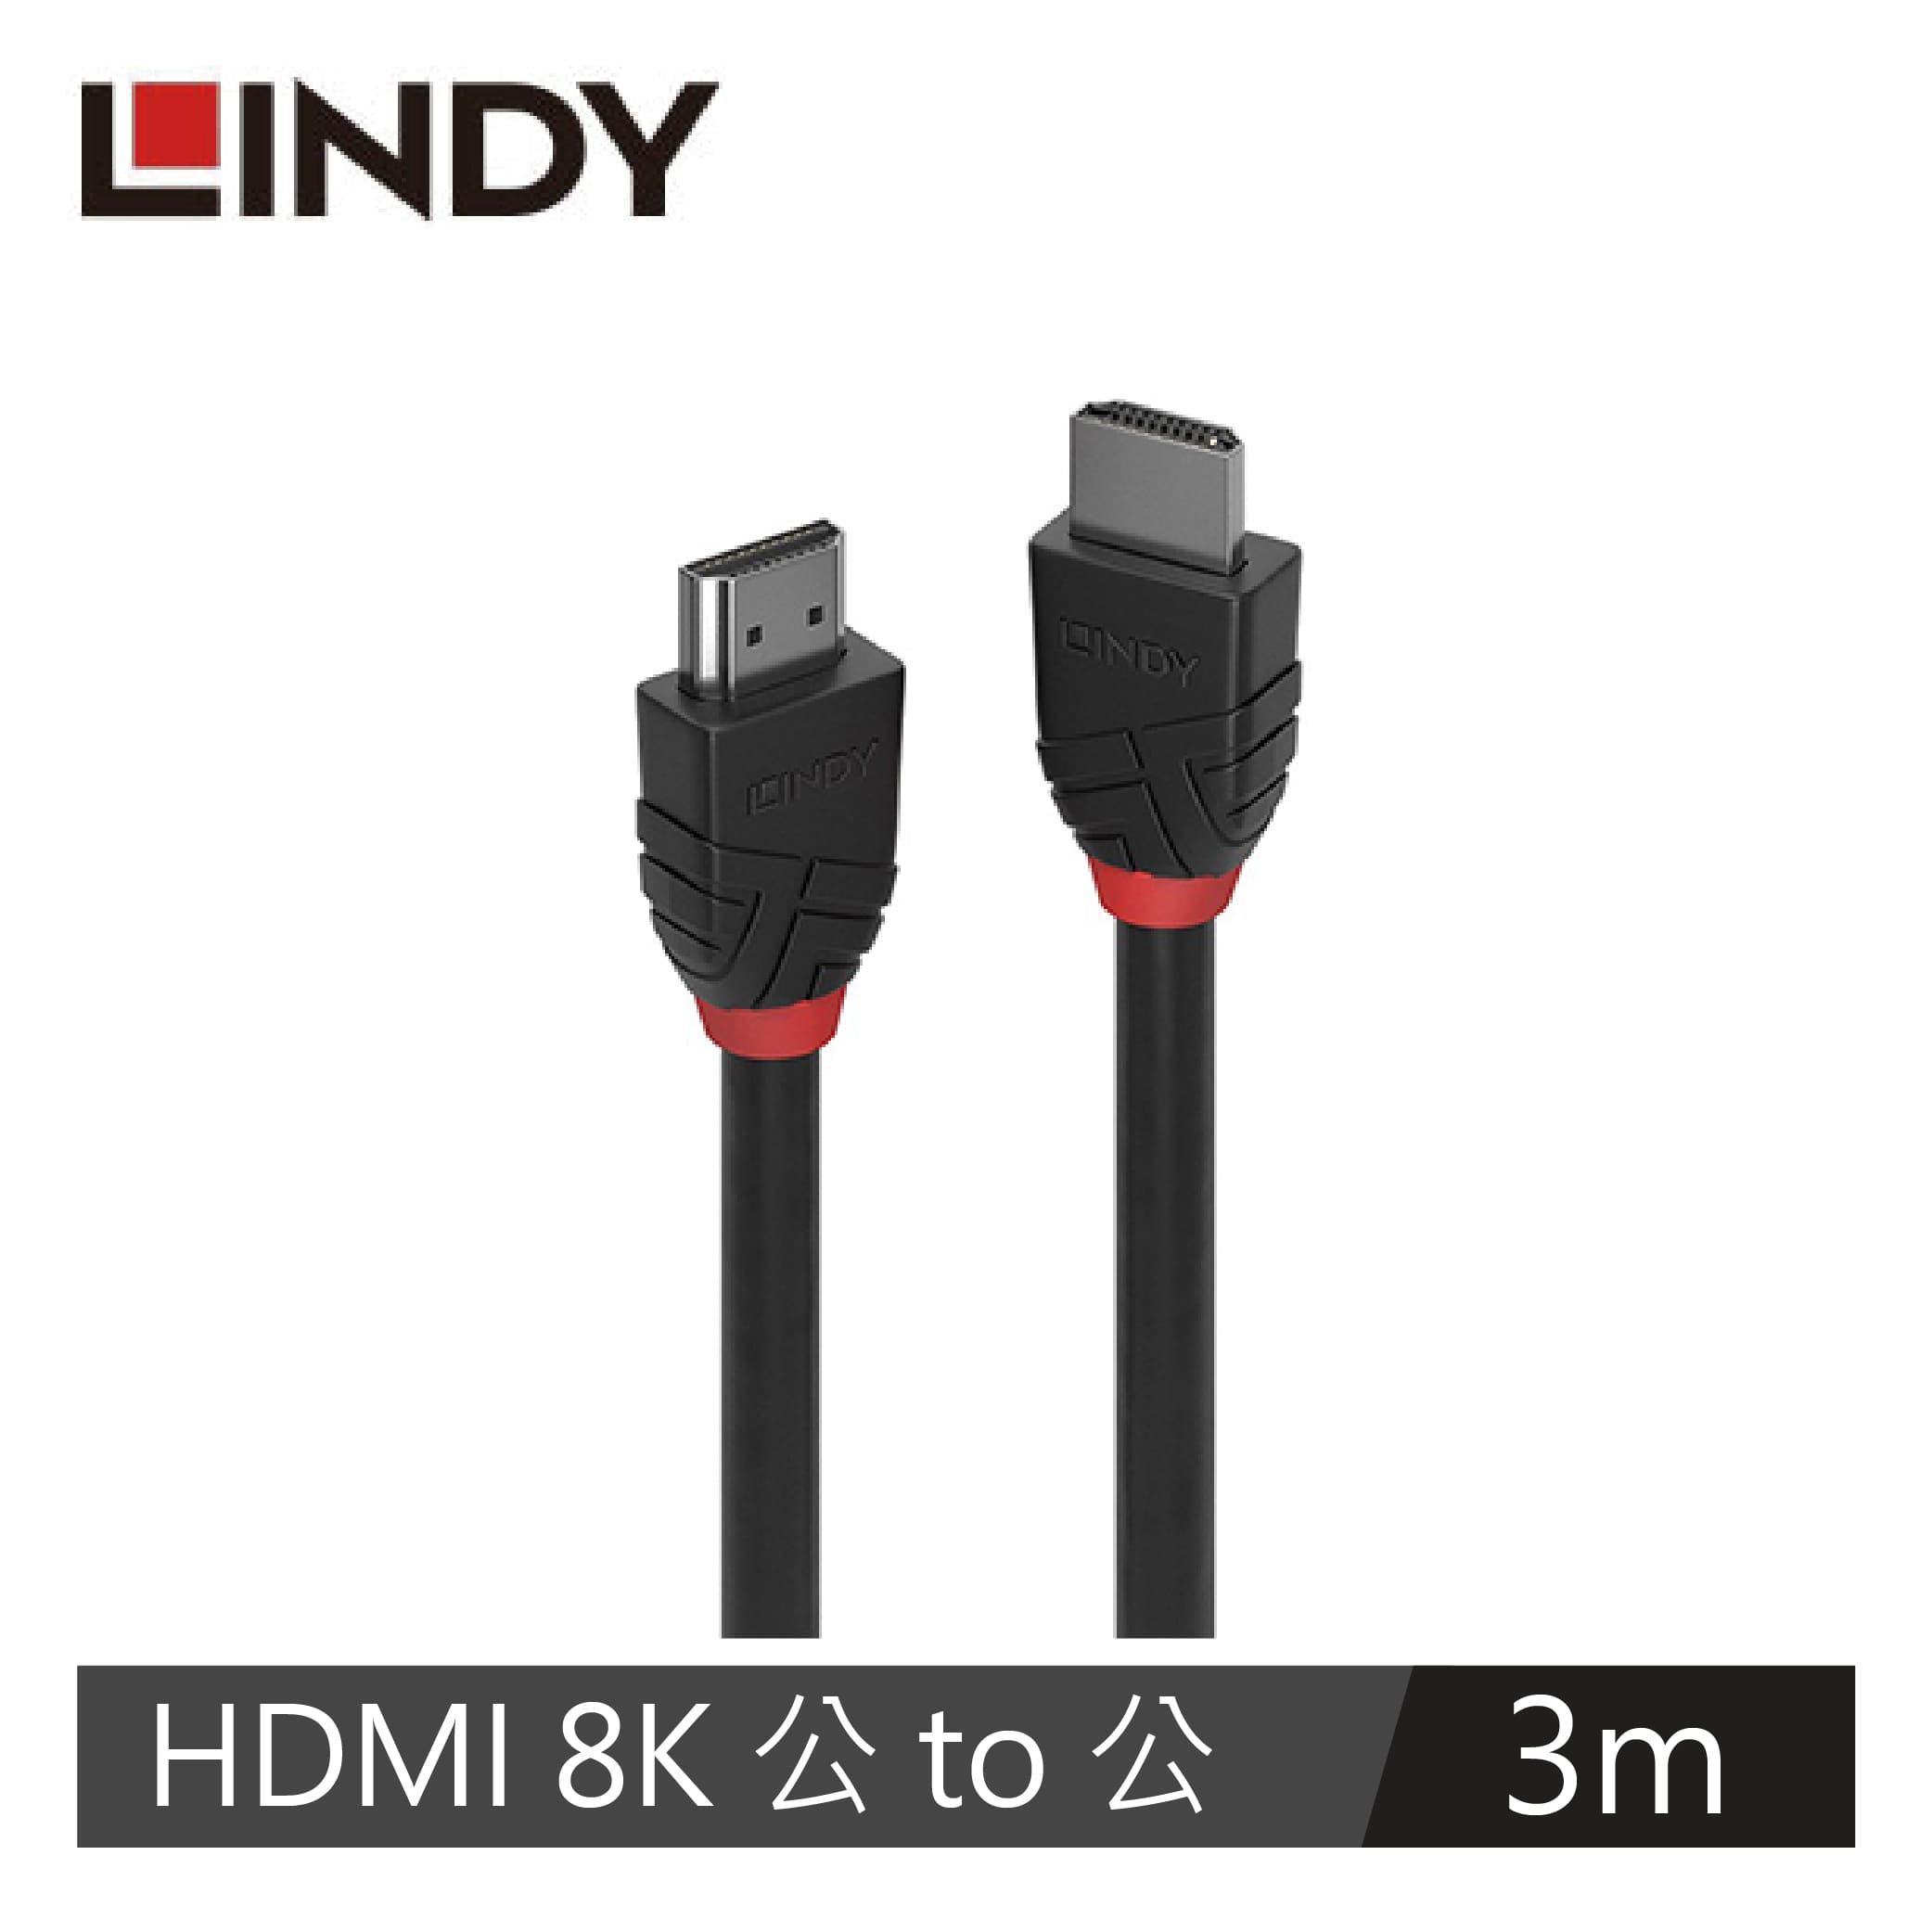 LINDY林帝 BLACK LINE 8K HDMI(TYPE-A) 公 TO 公傳輸線, 3M